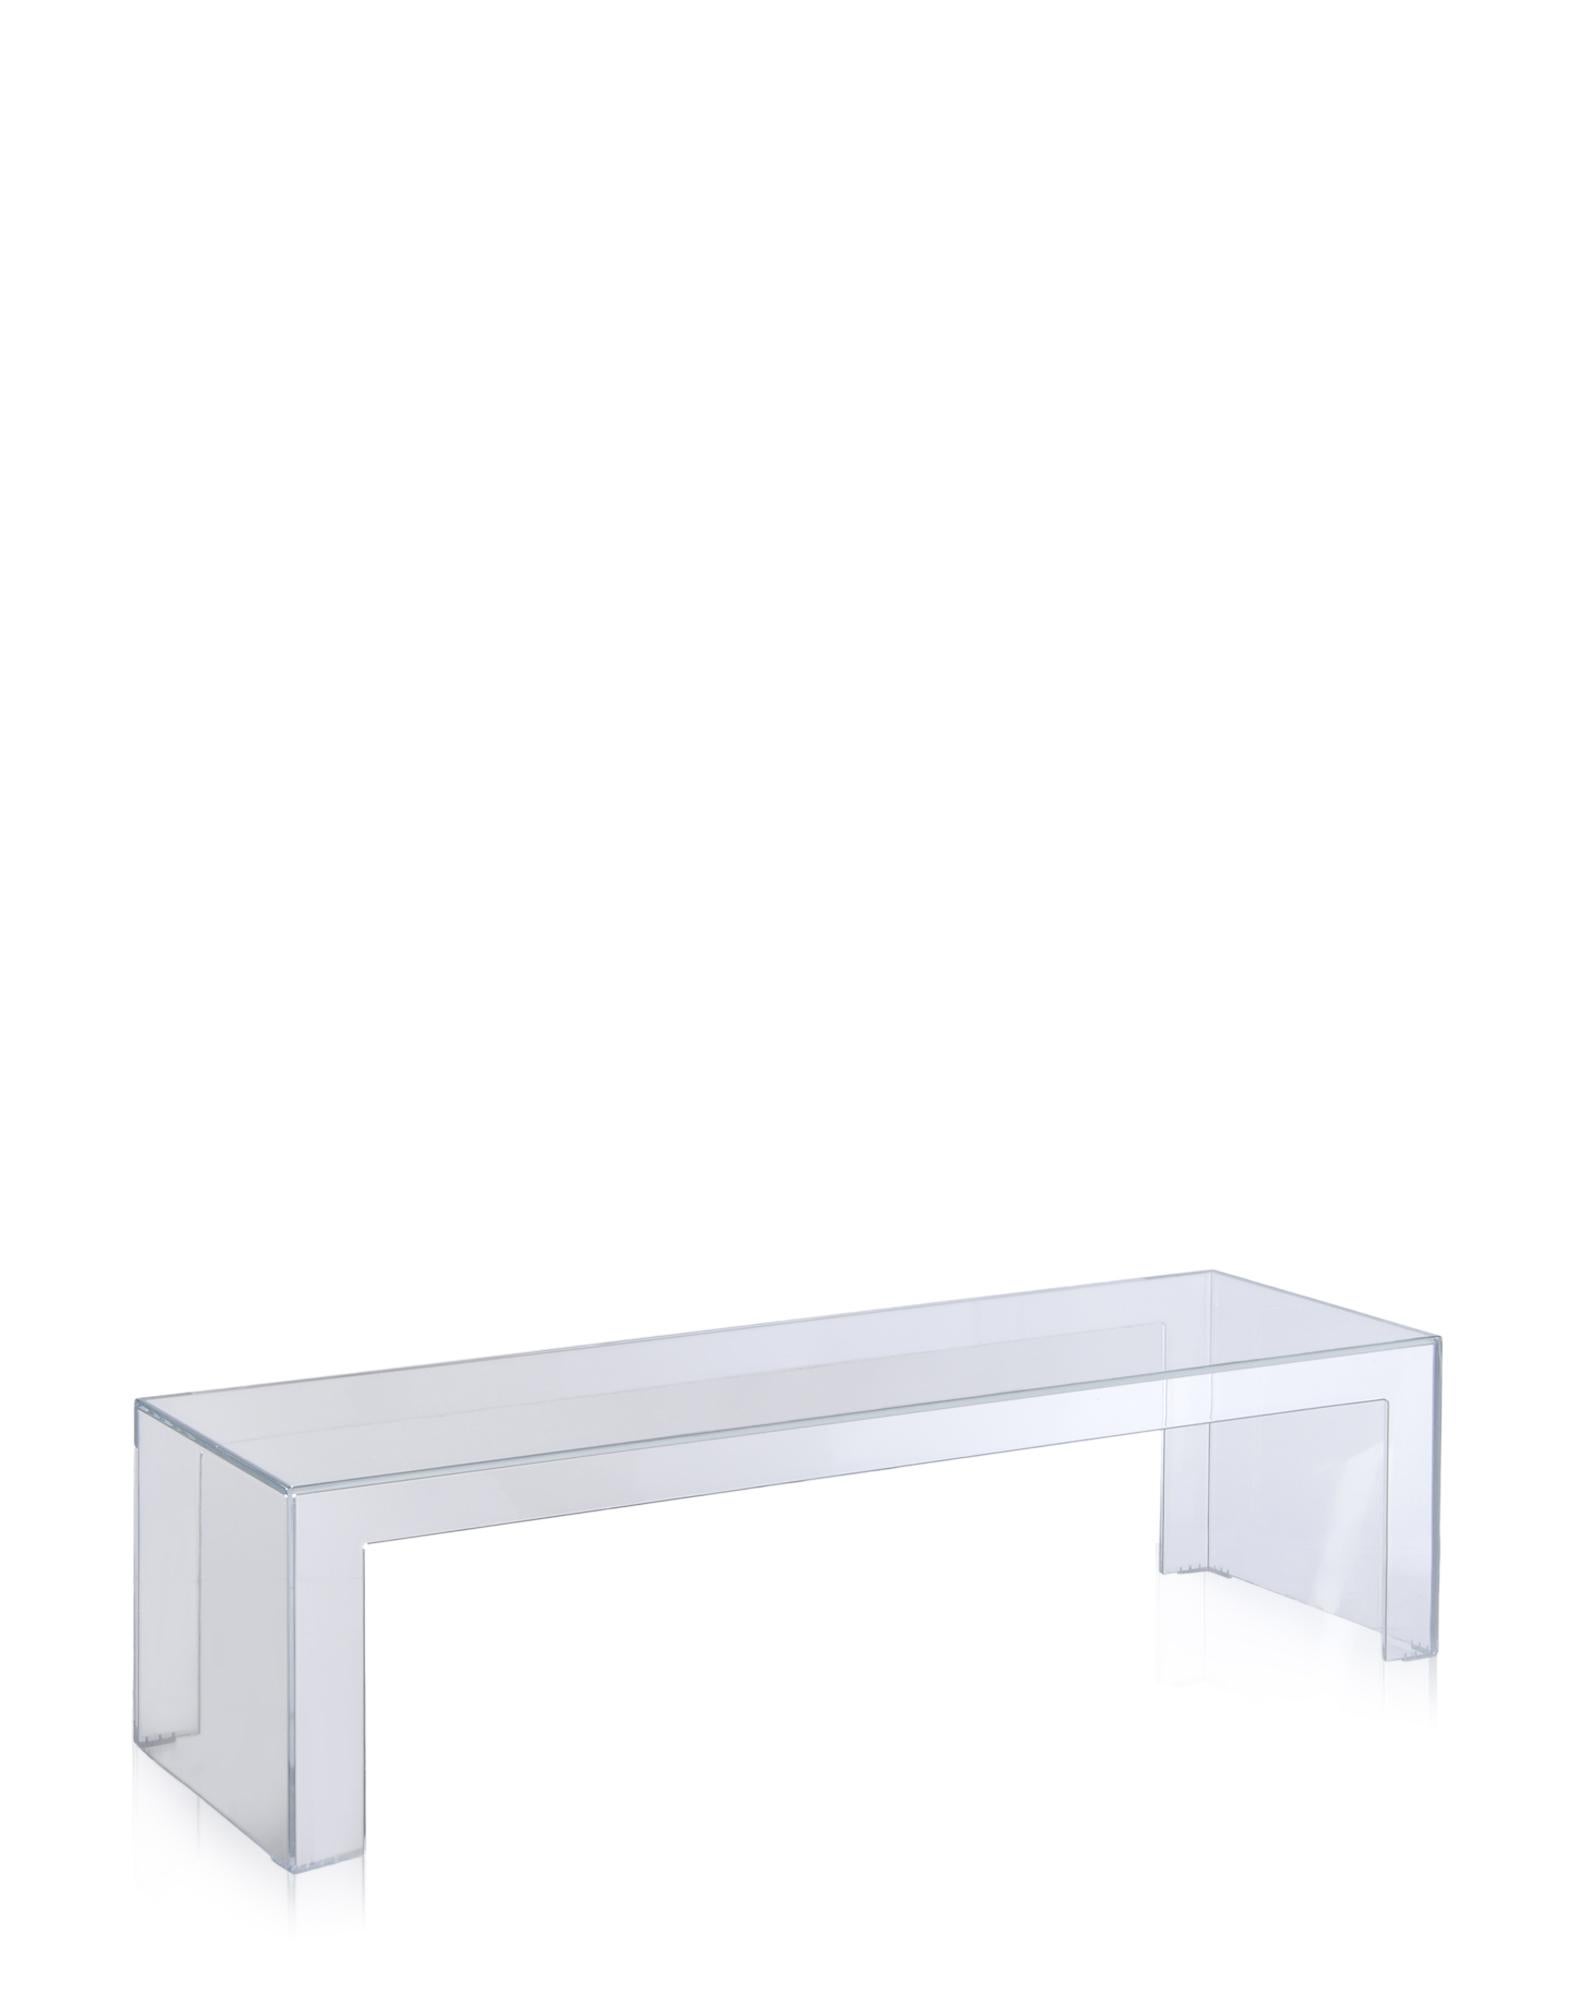 Der von Tokujin Yoshioka entworfene Tisch Invisible vereint Leichtigkeit und Solidität, Anmut und Eleganz sowie Zweckmäßigkeit und Stil. Durch seine Einfachheit und Reinheit der Form passt er sich jeder Umgebung an. Die raffinierte Farbpalette, die